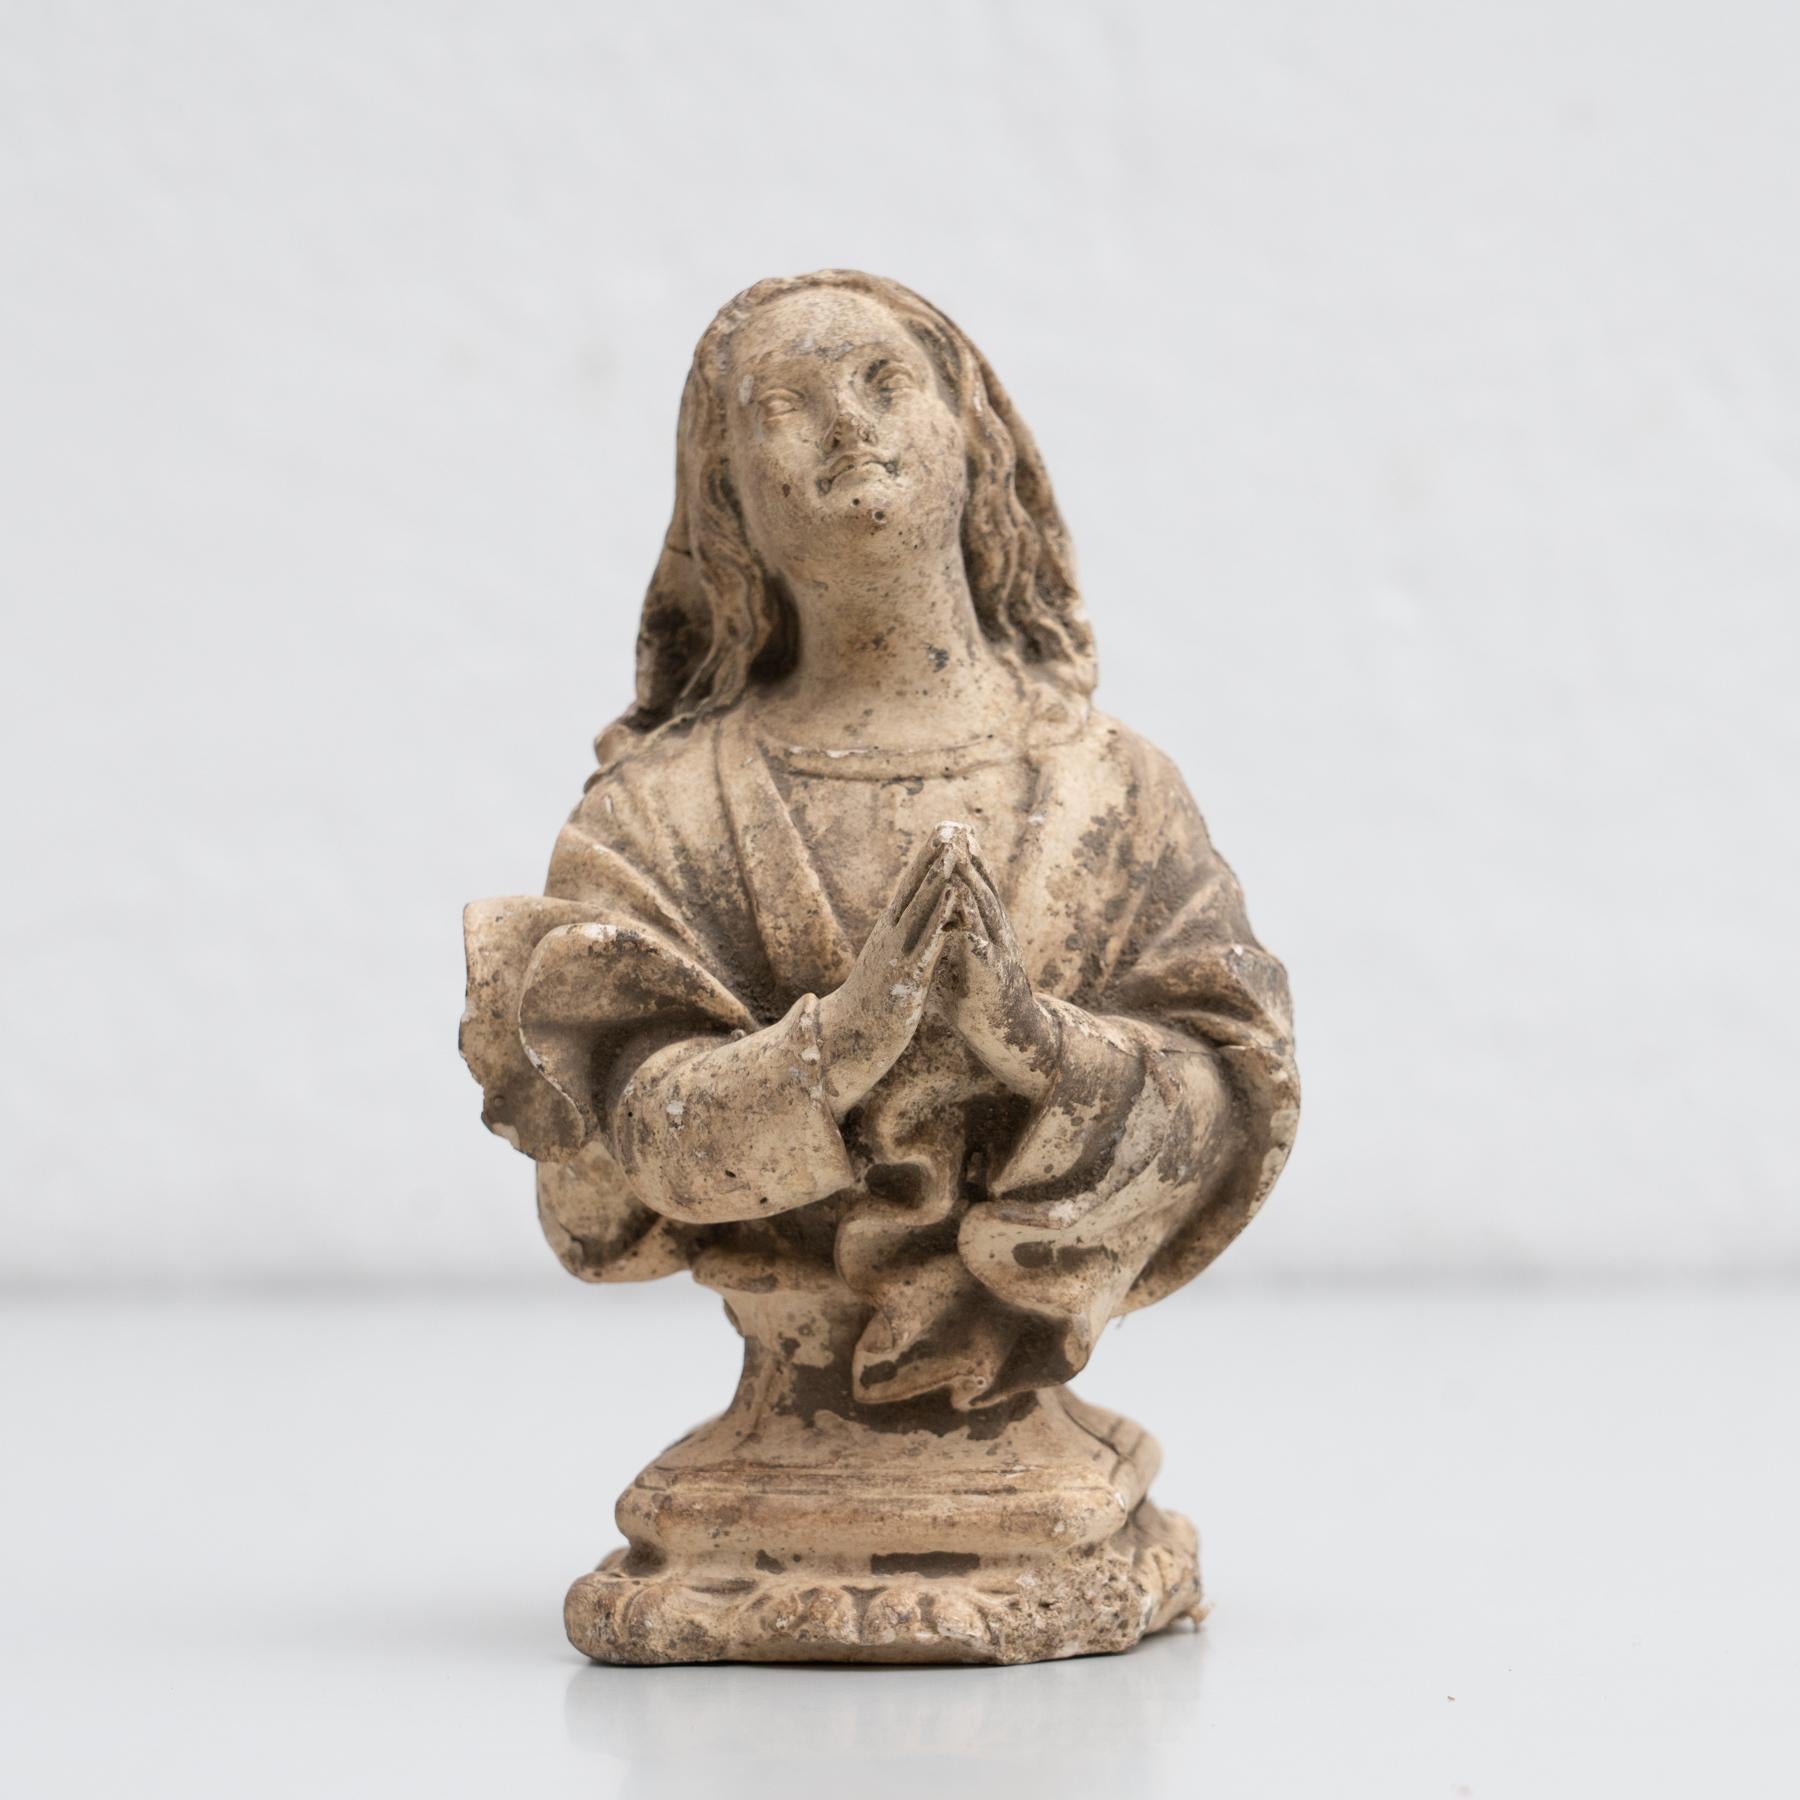 Figure religieuse traditionnelle en plâtre représentant une femme en prière.

Fabriqué dans un atelier catalan traditionnel à Olot, en Espagne, vers 1950.

En état d'origine, avec une usure mineure conforme à l'âge et à l'utilisation, préservant